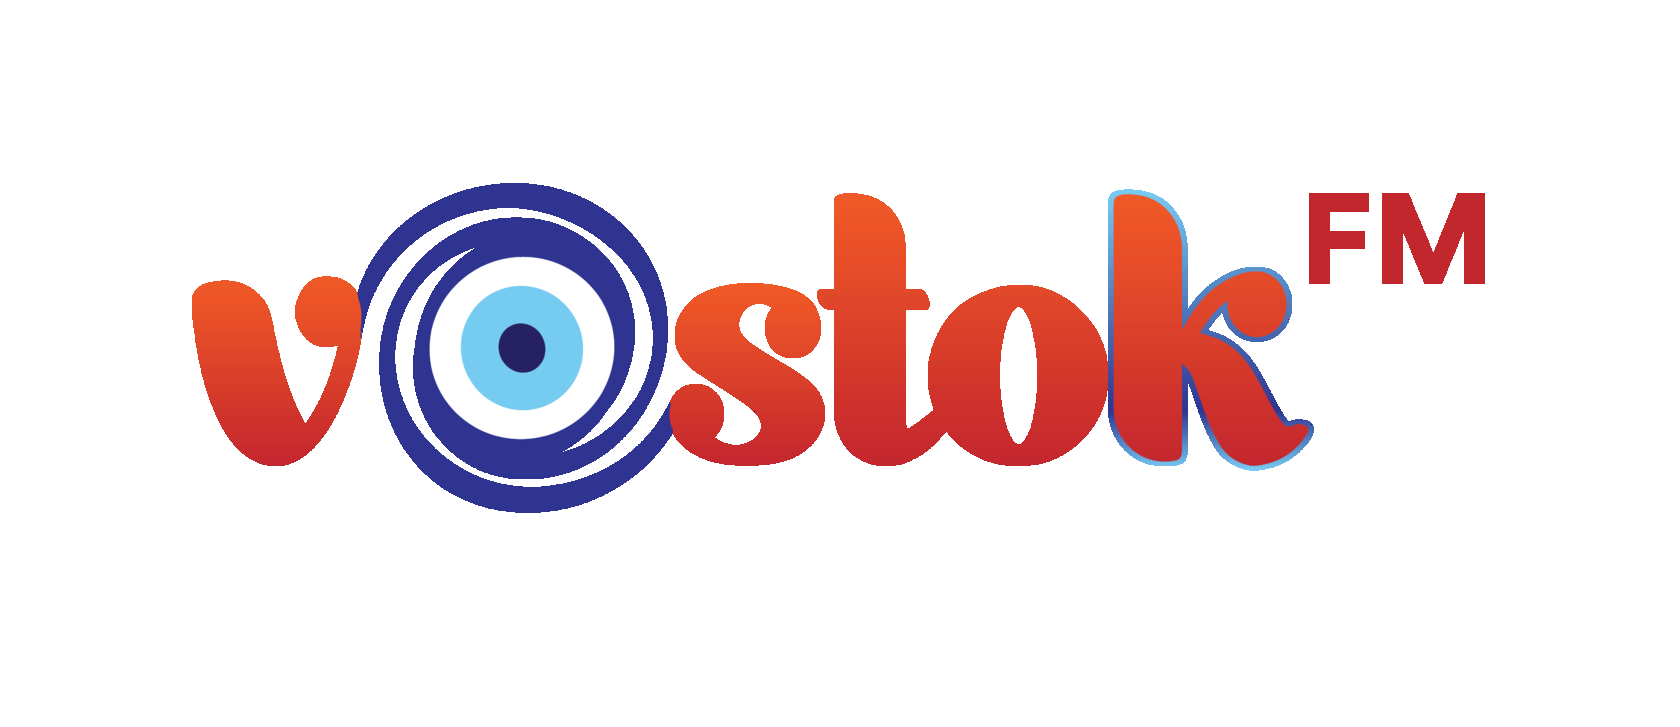 Включи казахстанское радио. Vostok fm Казахстан. Восток fm логотип. Радиостанция Vostok. ФМ.